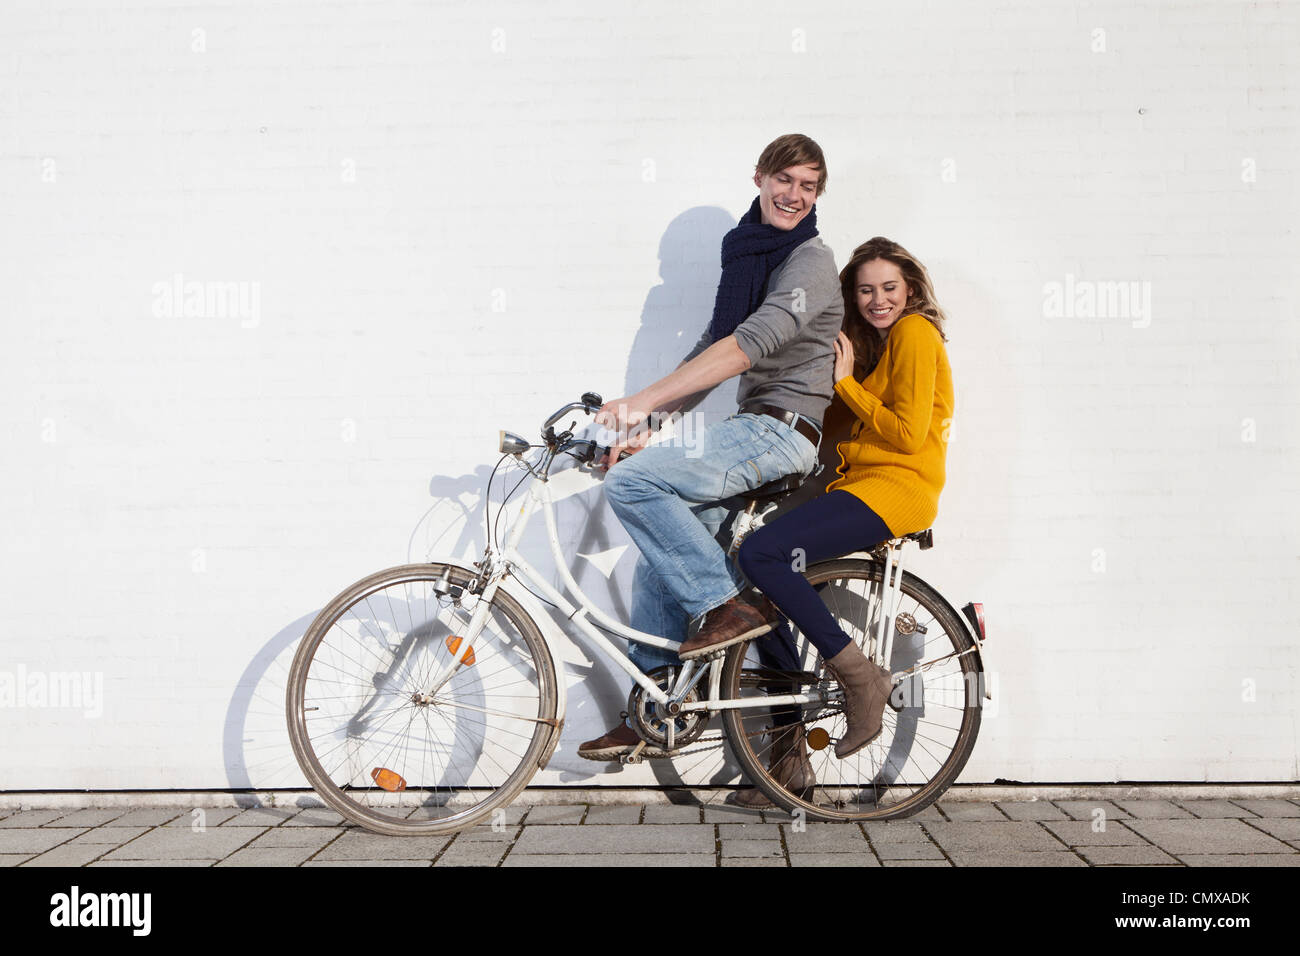 Deutschland, Bayern, München, junge Paar auf Fahrrad, Lächeln Stockfoto